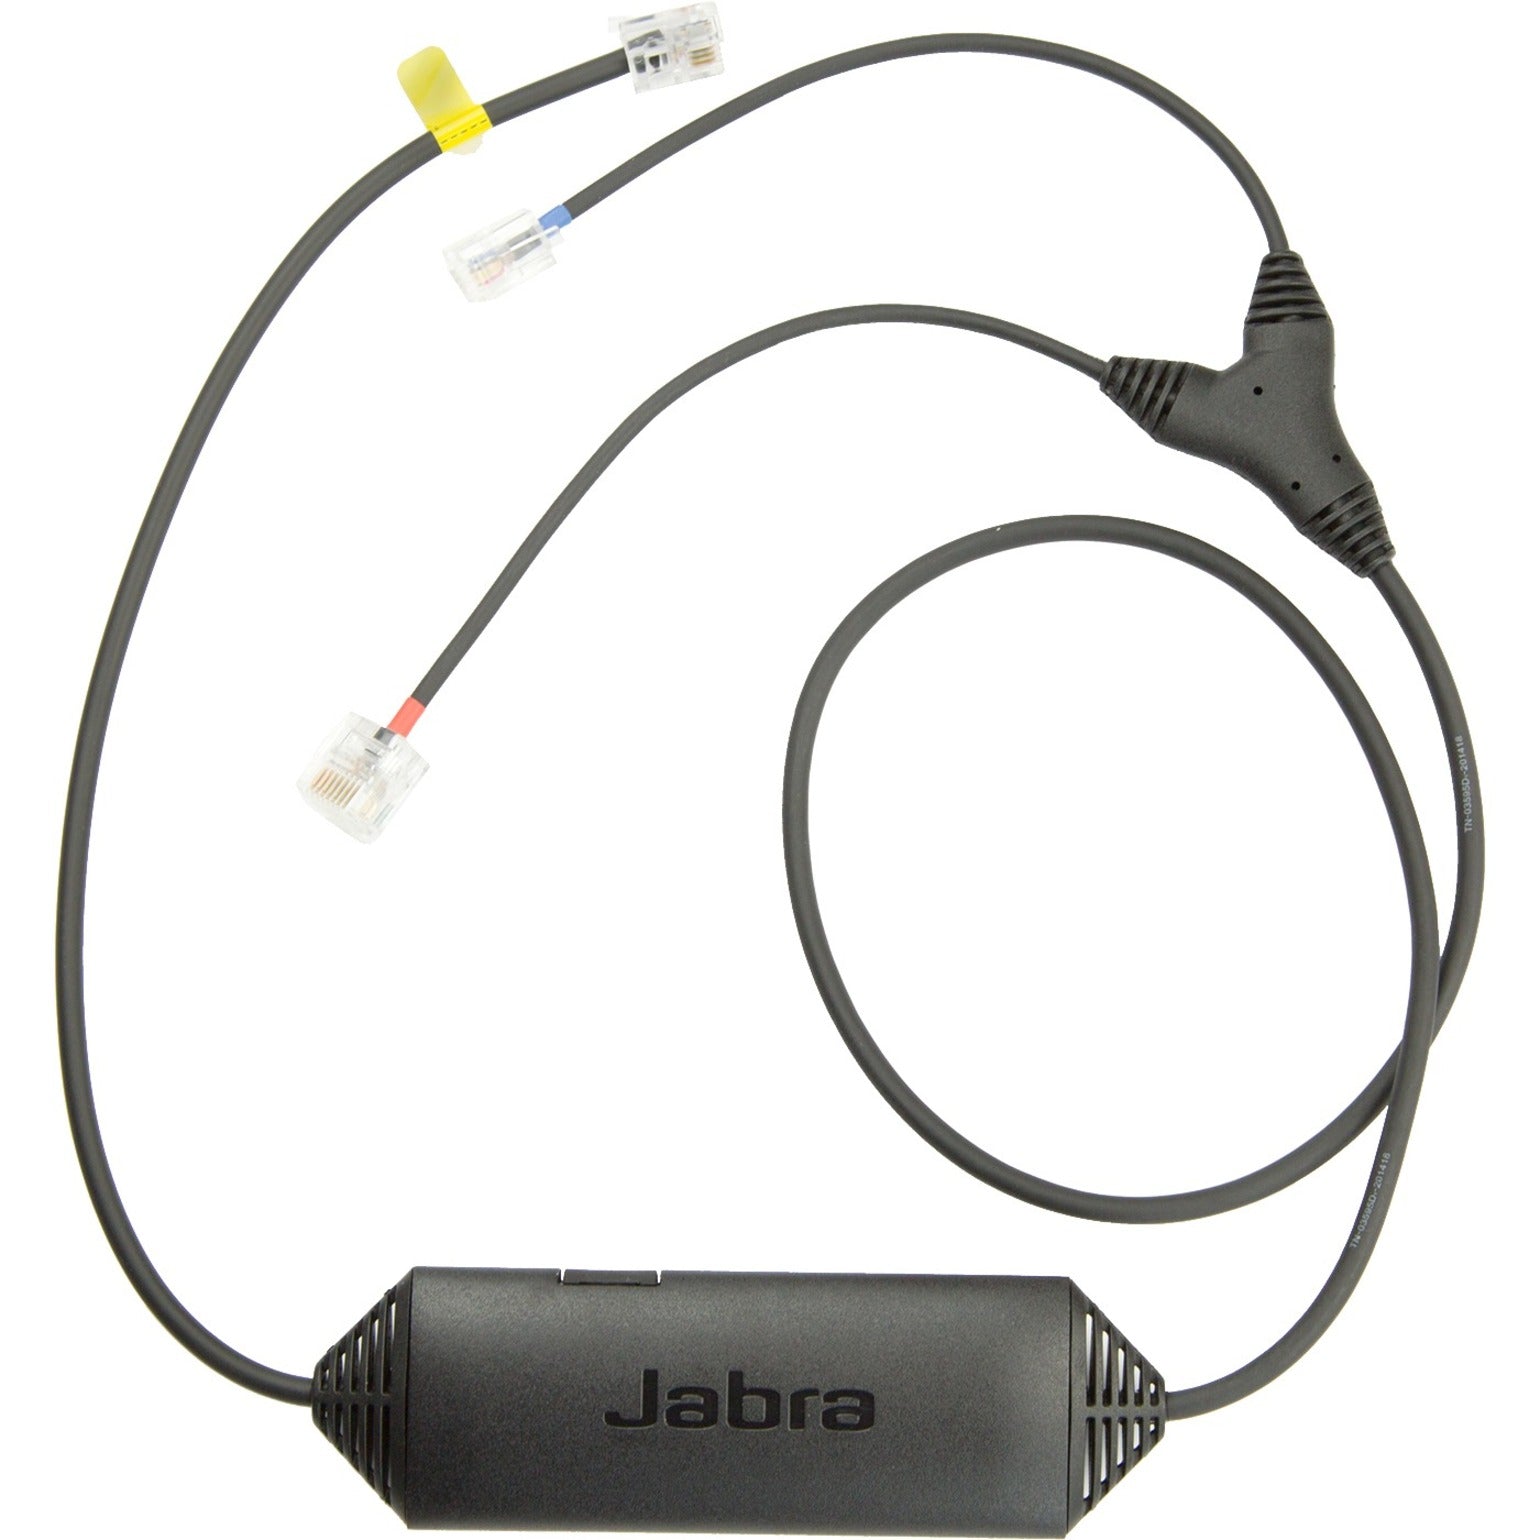 Jabra 14201-41 LINK Elektronischer Hakenumschalter Cisco kompatibel für PRO 9400 PRO 900 Motion Office